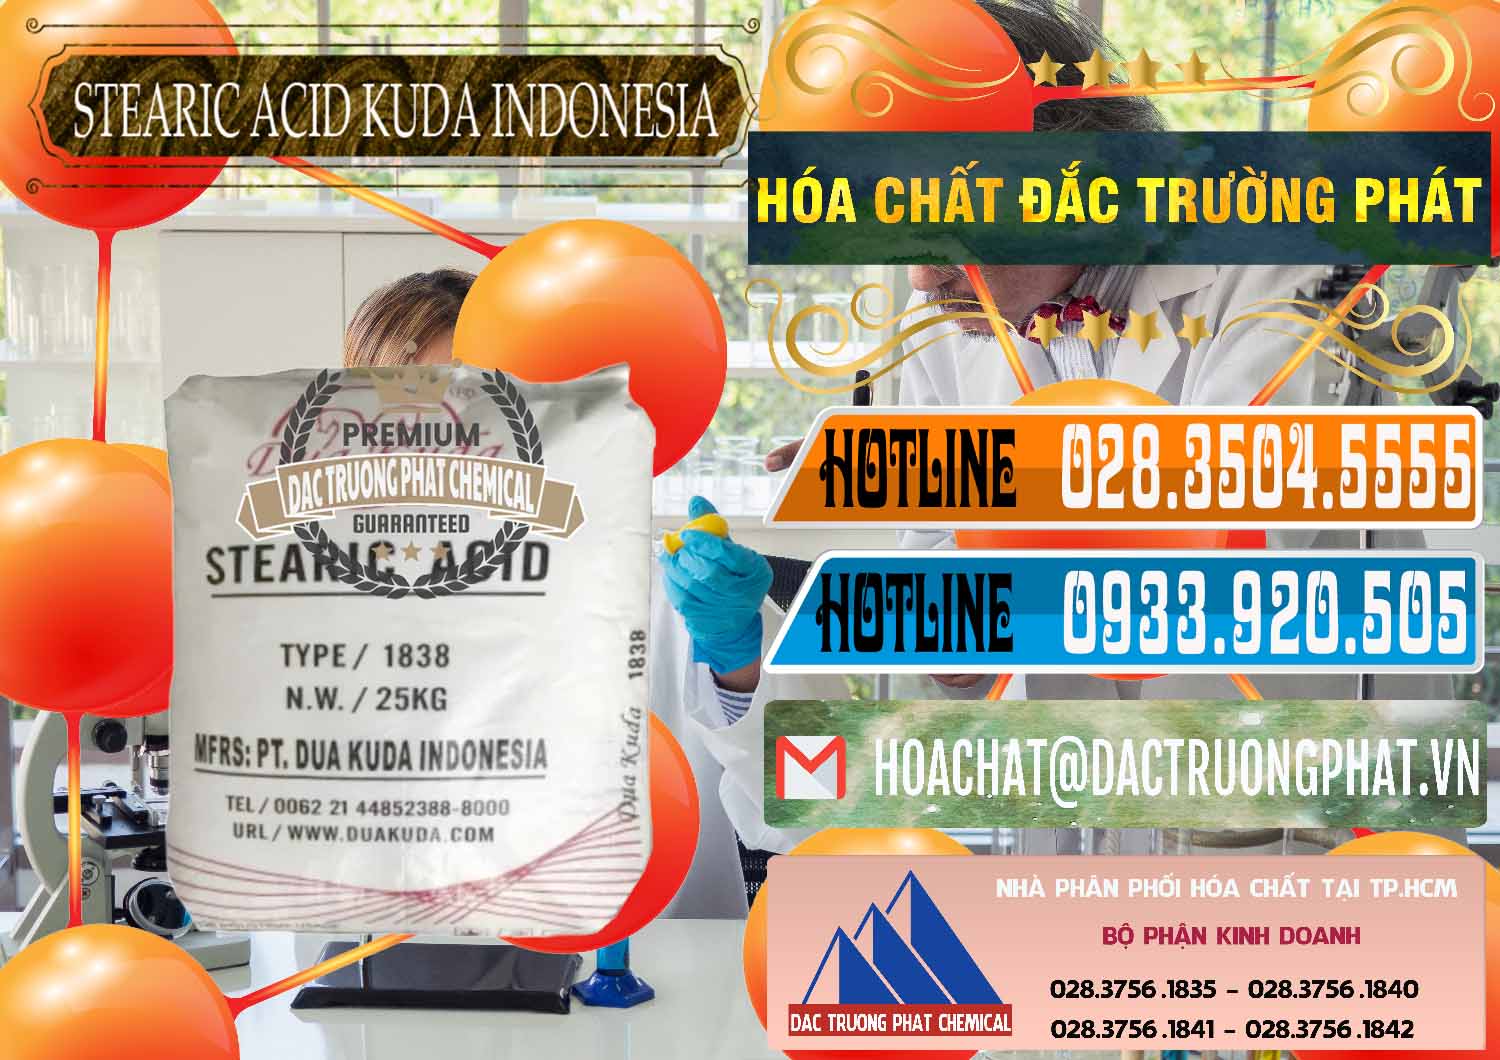 Nơi chuyên nhập khẩu và bán Axit Stearic - Stearic Acid Dua Kuda Indonesia - 0388 - Công ty nhập khẩu và cung cấp hóa chất tại TP.HCM - stmp.net